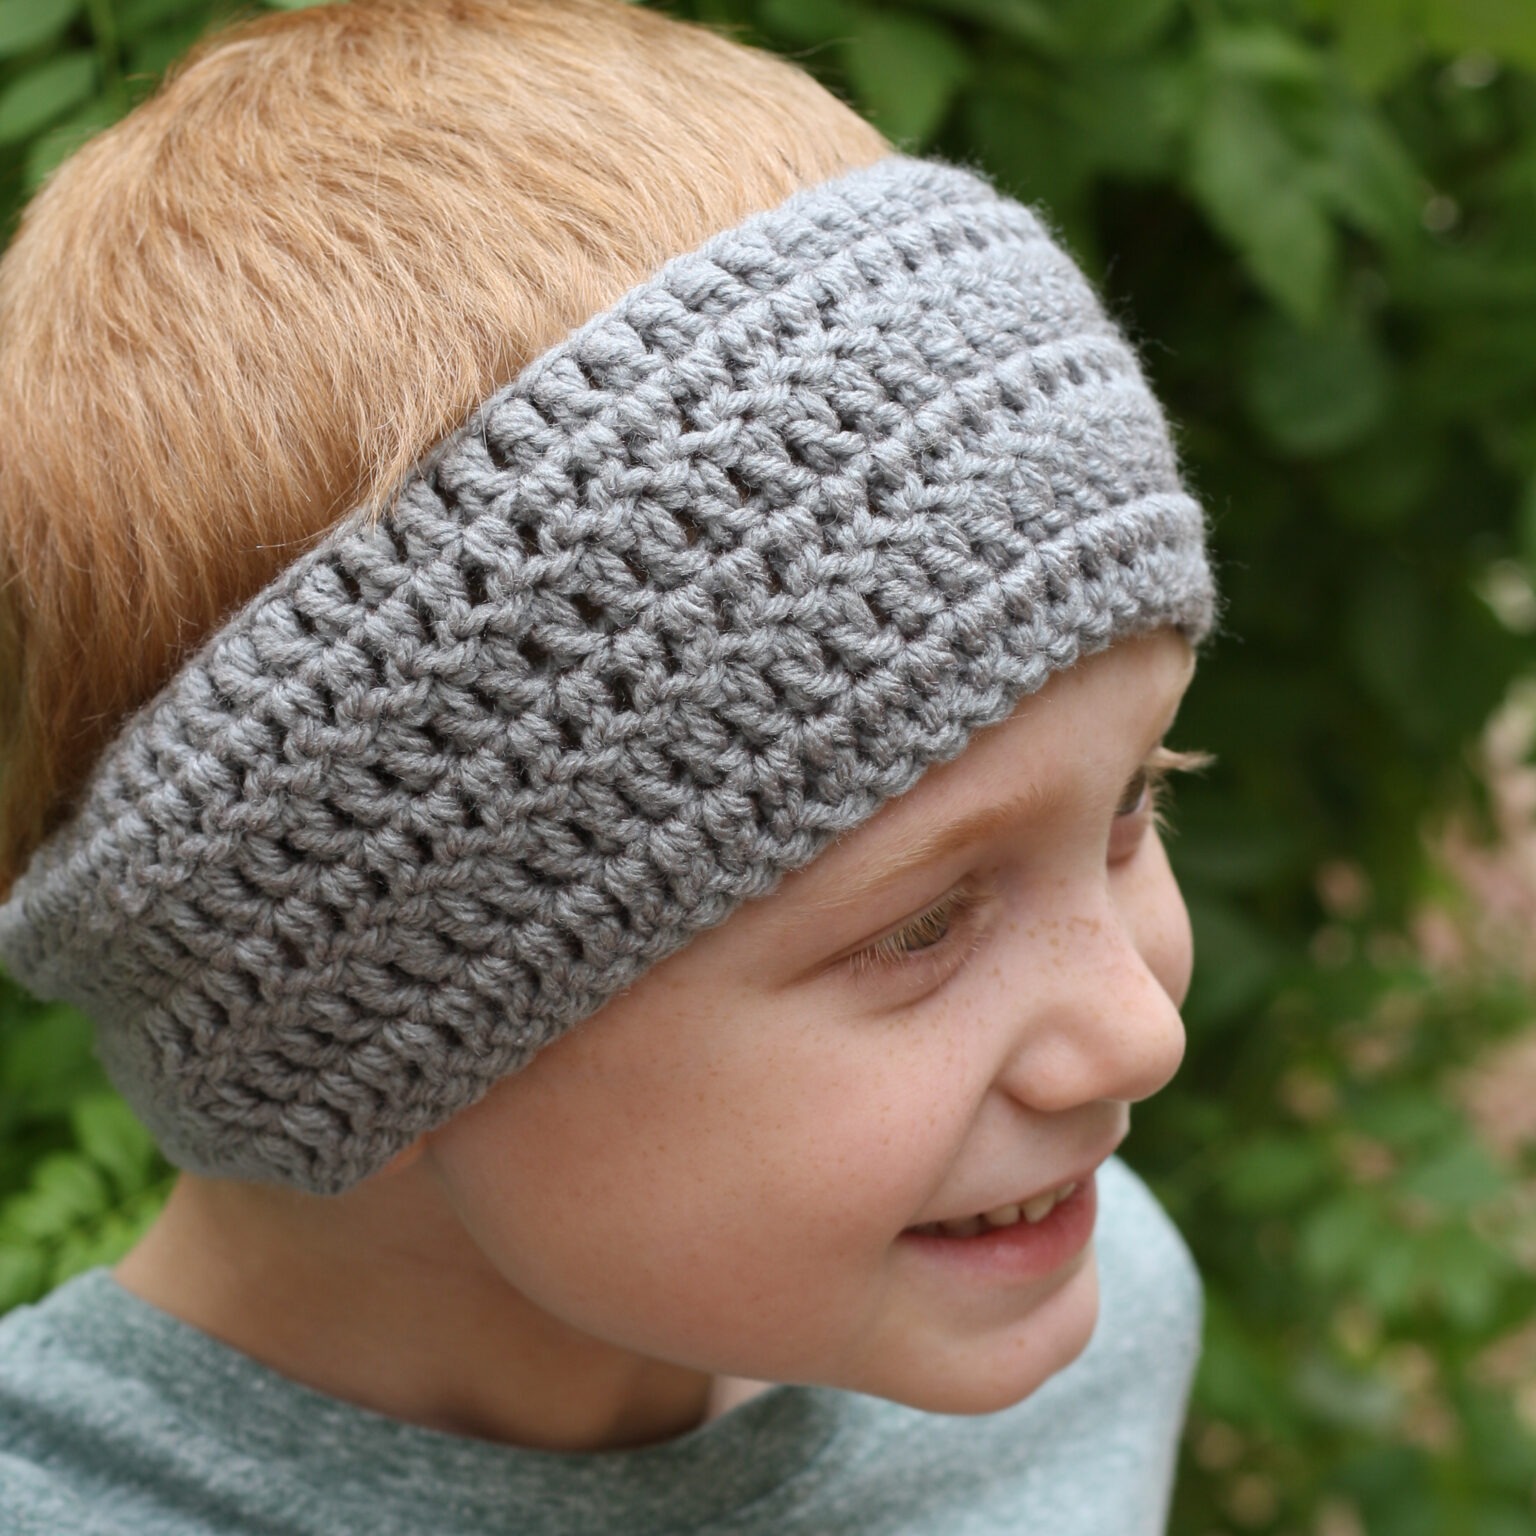 beginner-crochet-ear-warmer-pattern-winding-road-crochet